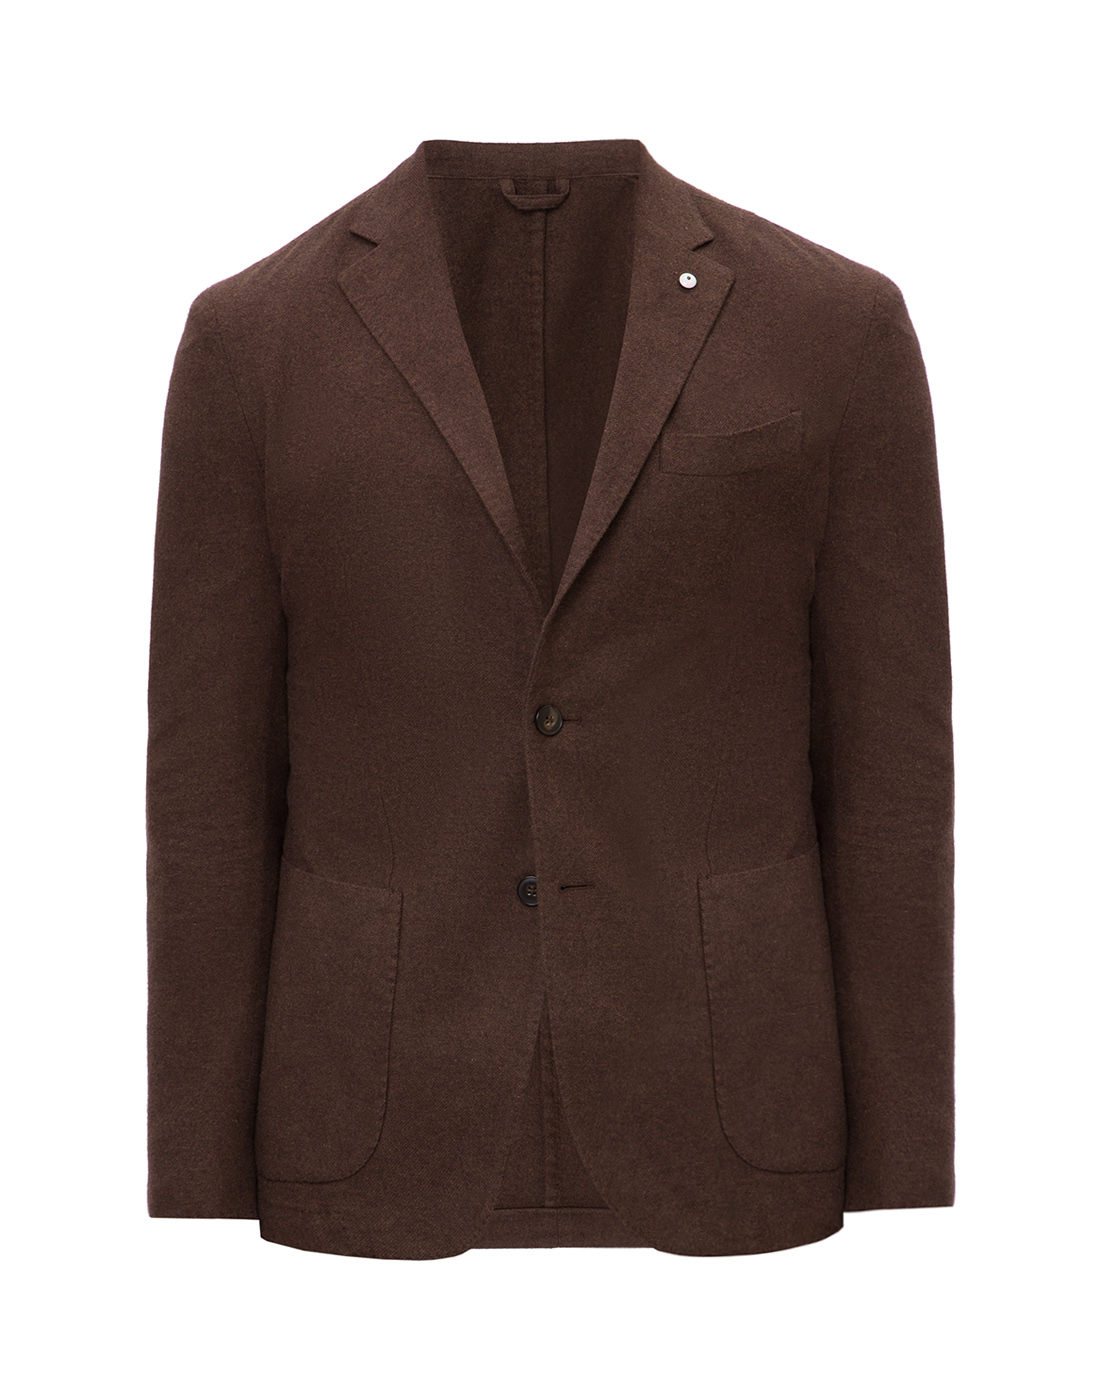 Пиджак коричневый мужской  Lubiam S95079/05-1